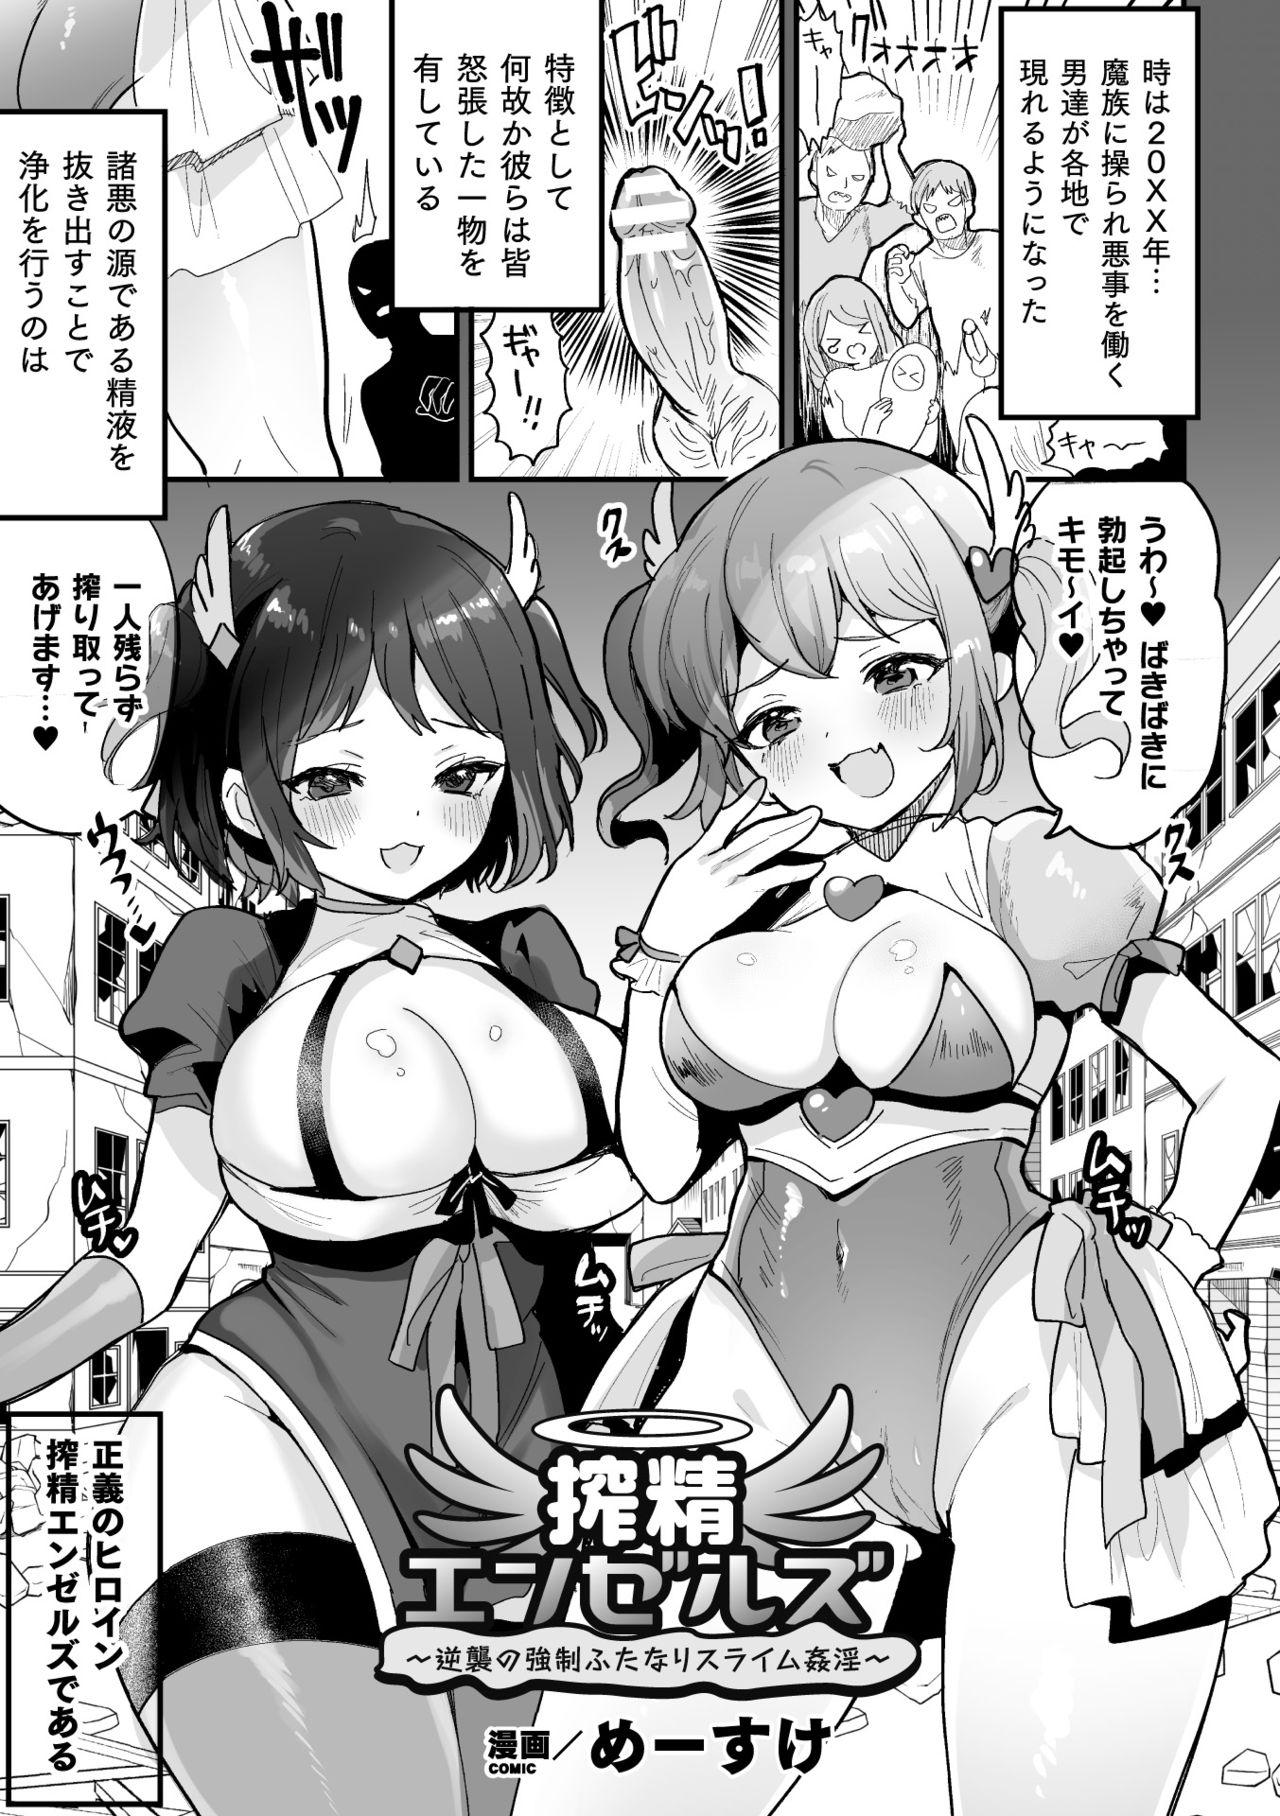 Topless 2D Comic Magazine - Futanari Mesugaki Sakusei Namaiki Zako Mesu Sao o Wakarase Shibori! Vol. 2 Futa - Page 3